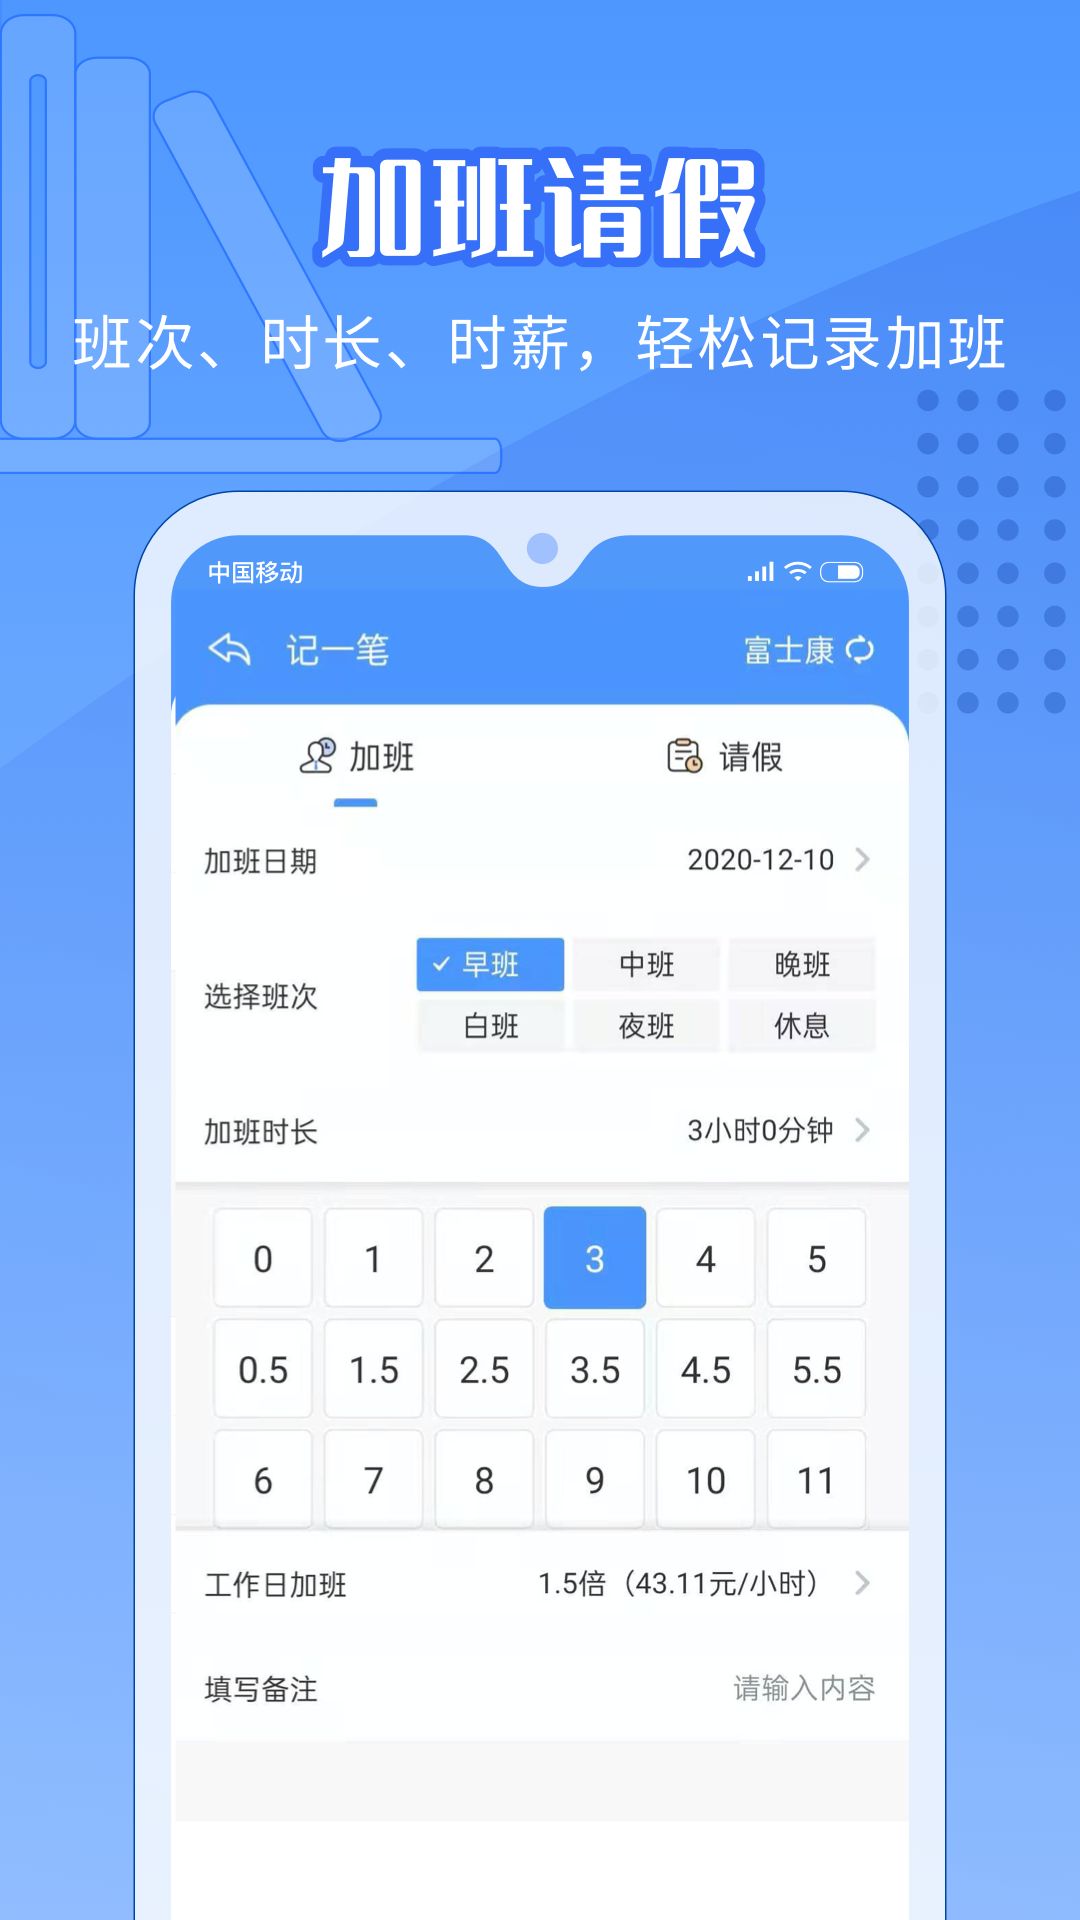 日历记加班app最新版下载 v3.2.1